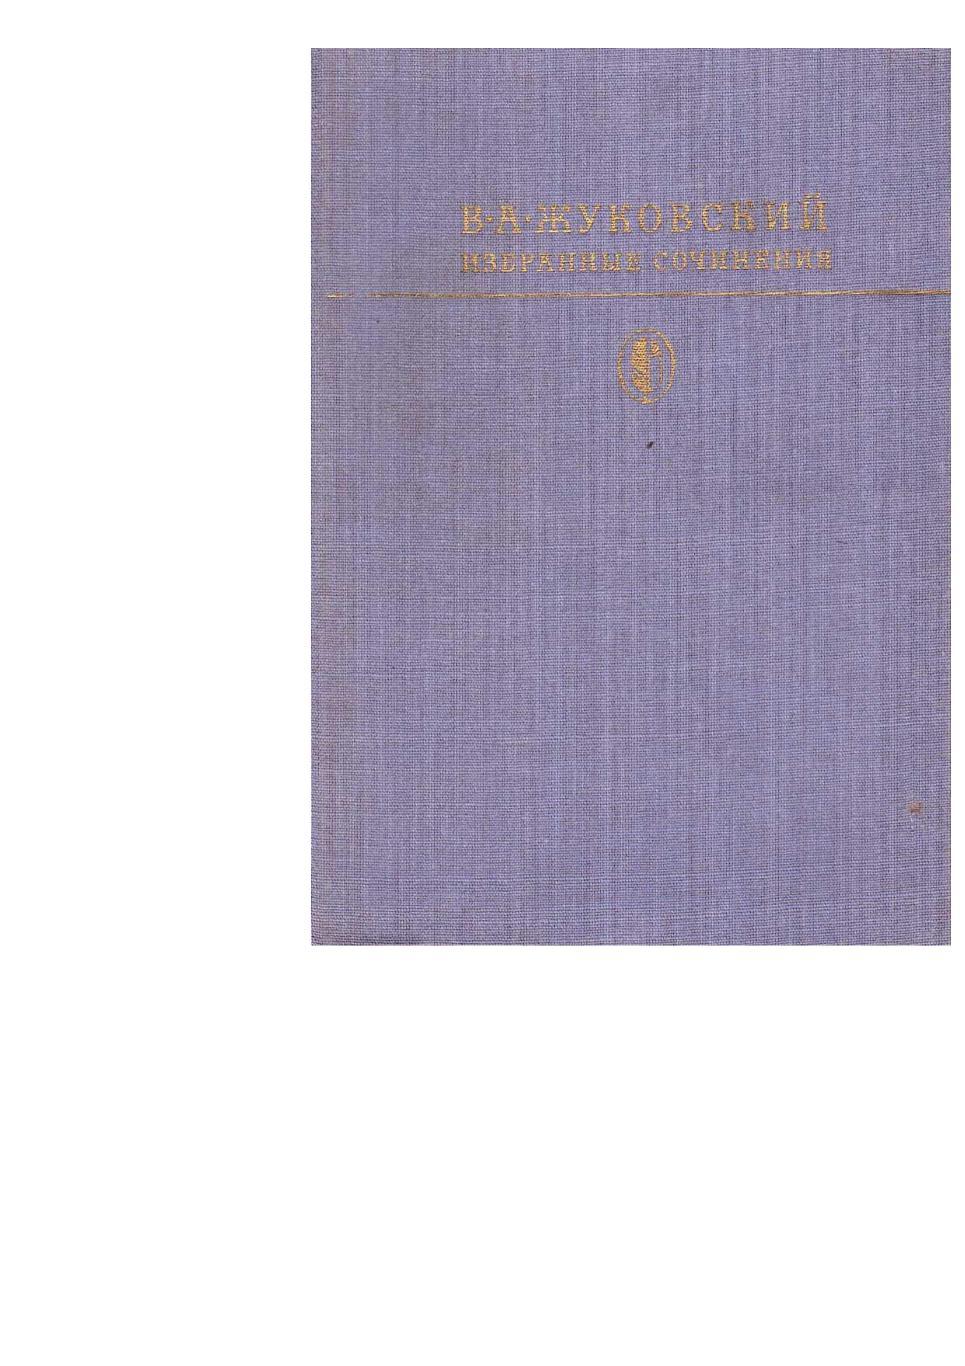 Жуковский В.А. Избранные сочинения. – М., 1982.